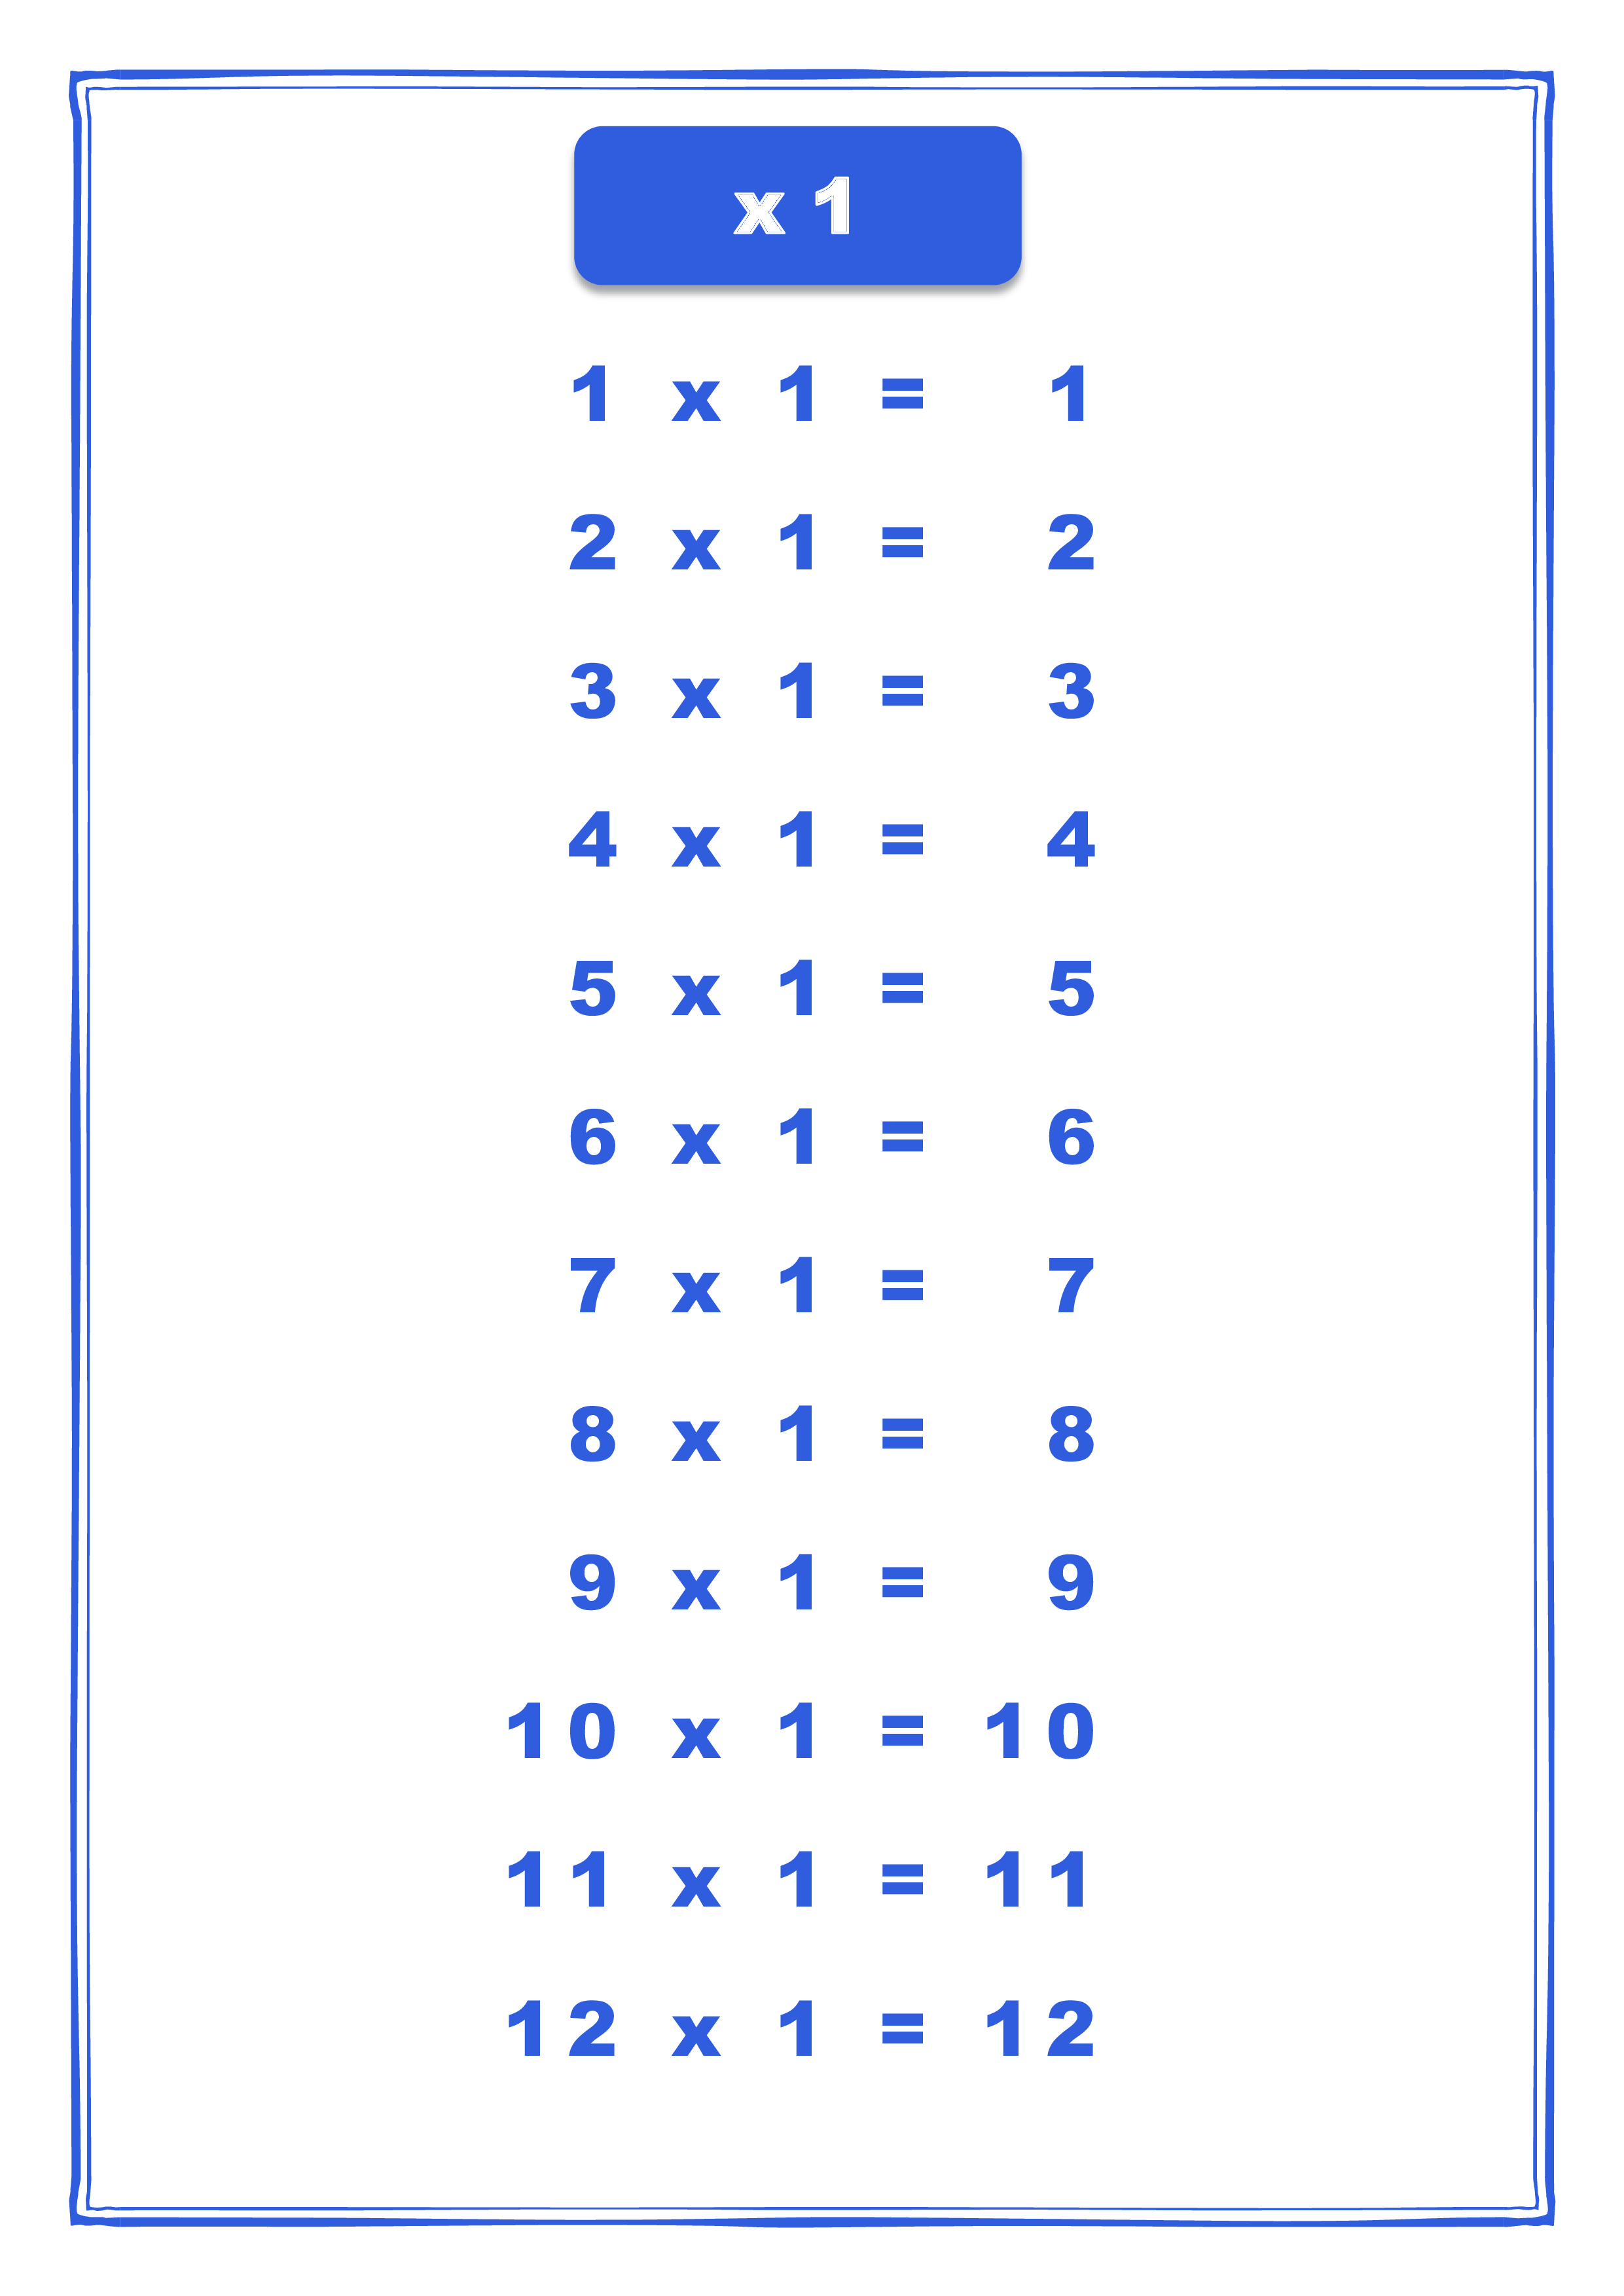 x1 times table chart voorbeeld afbeelding 